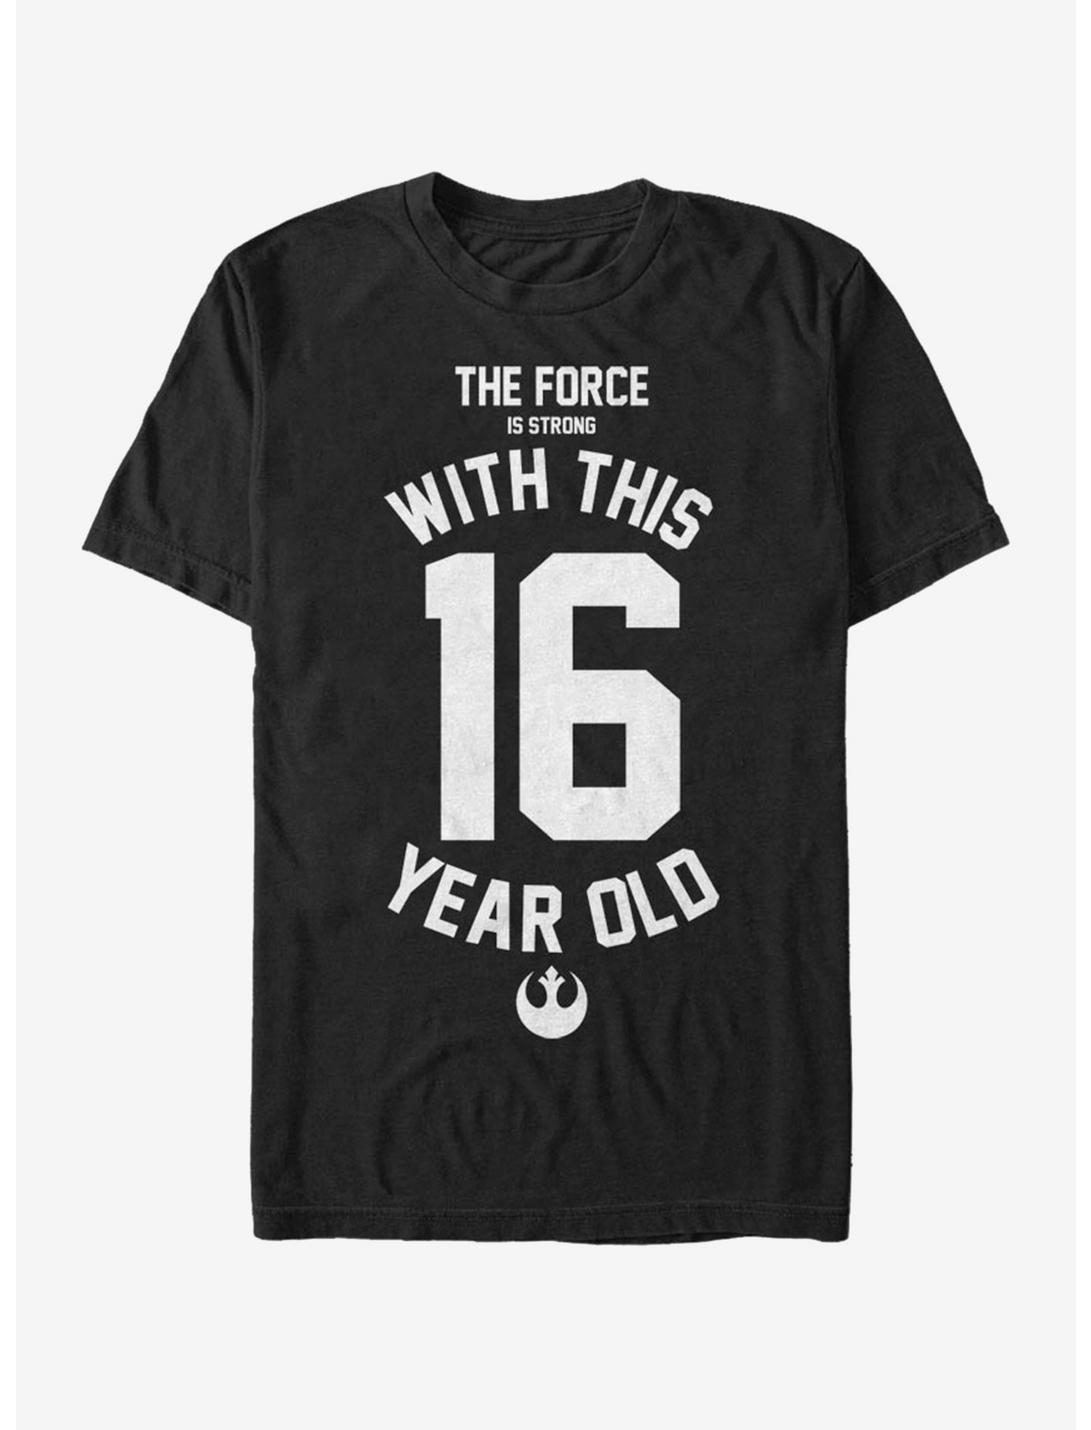 Star Wars Force Sensitive Sixteen T-Shirt, BLACK, hi-res